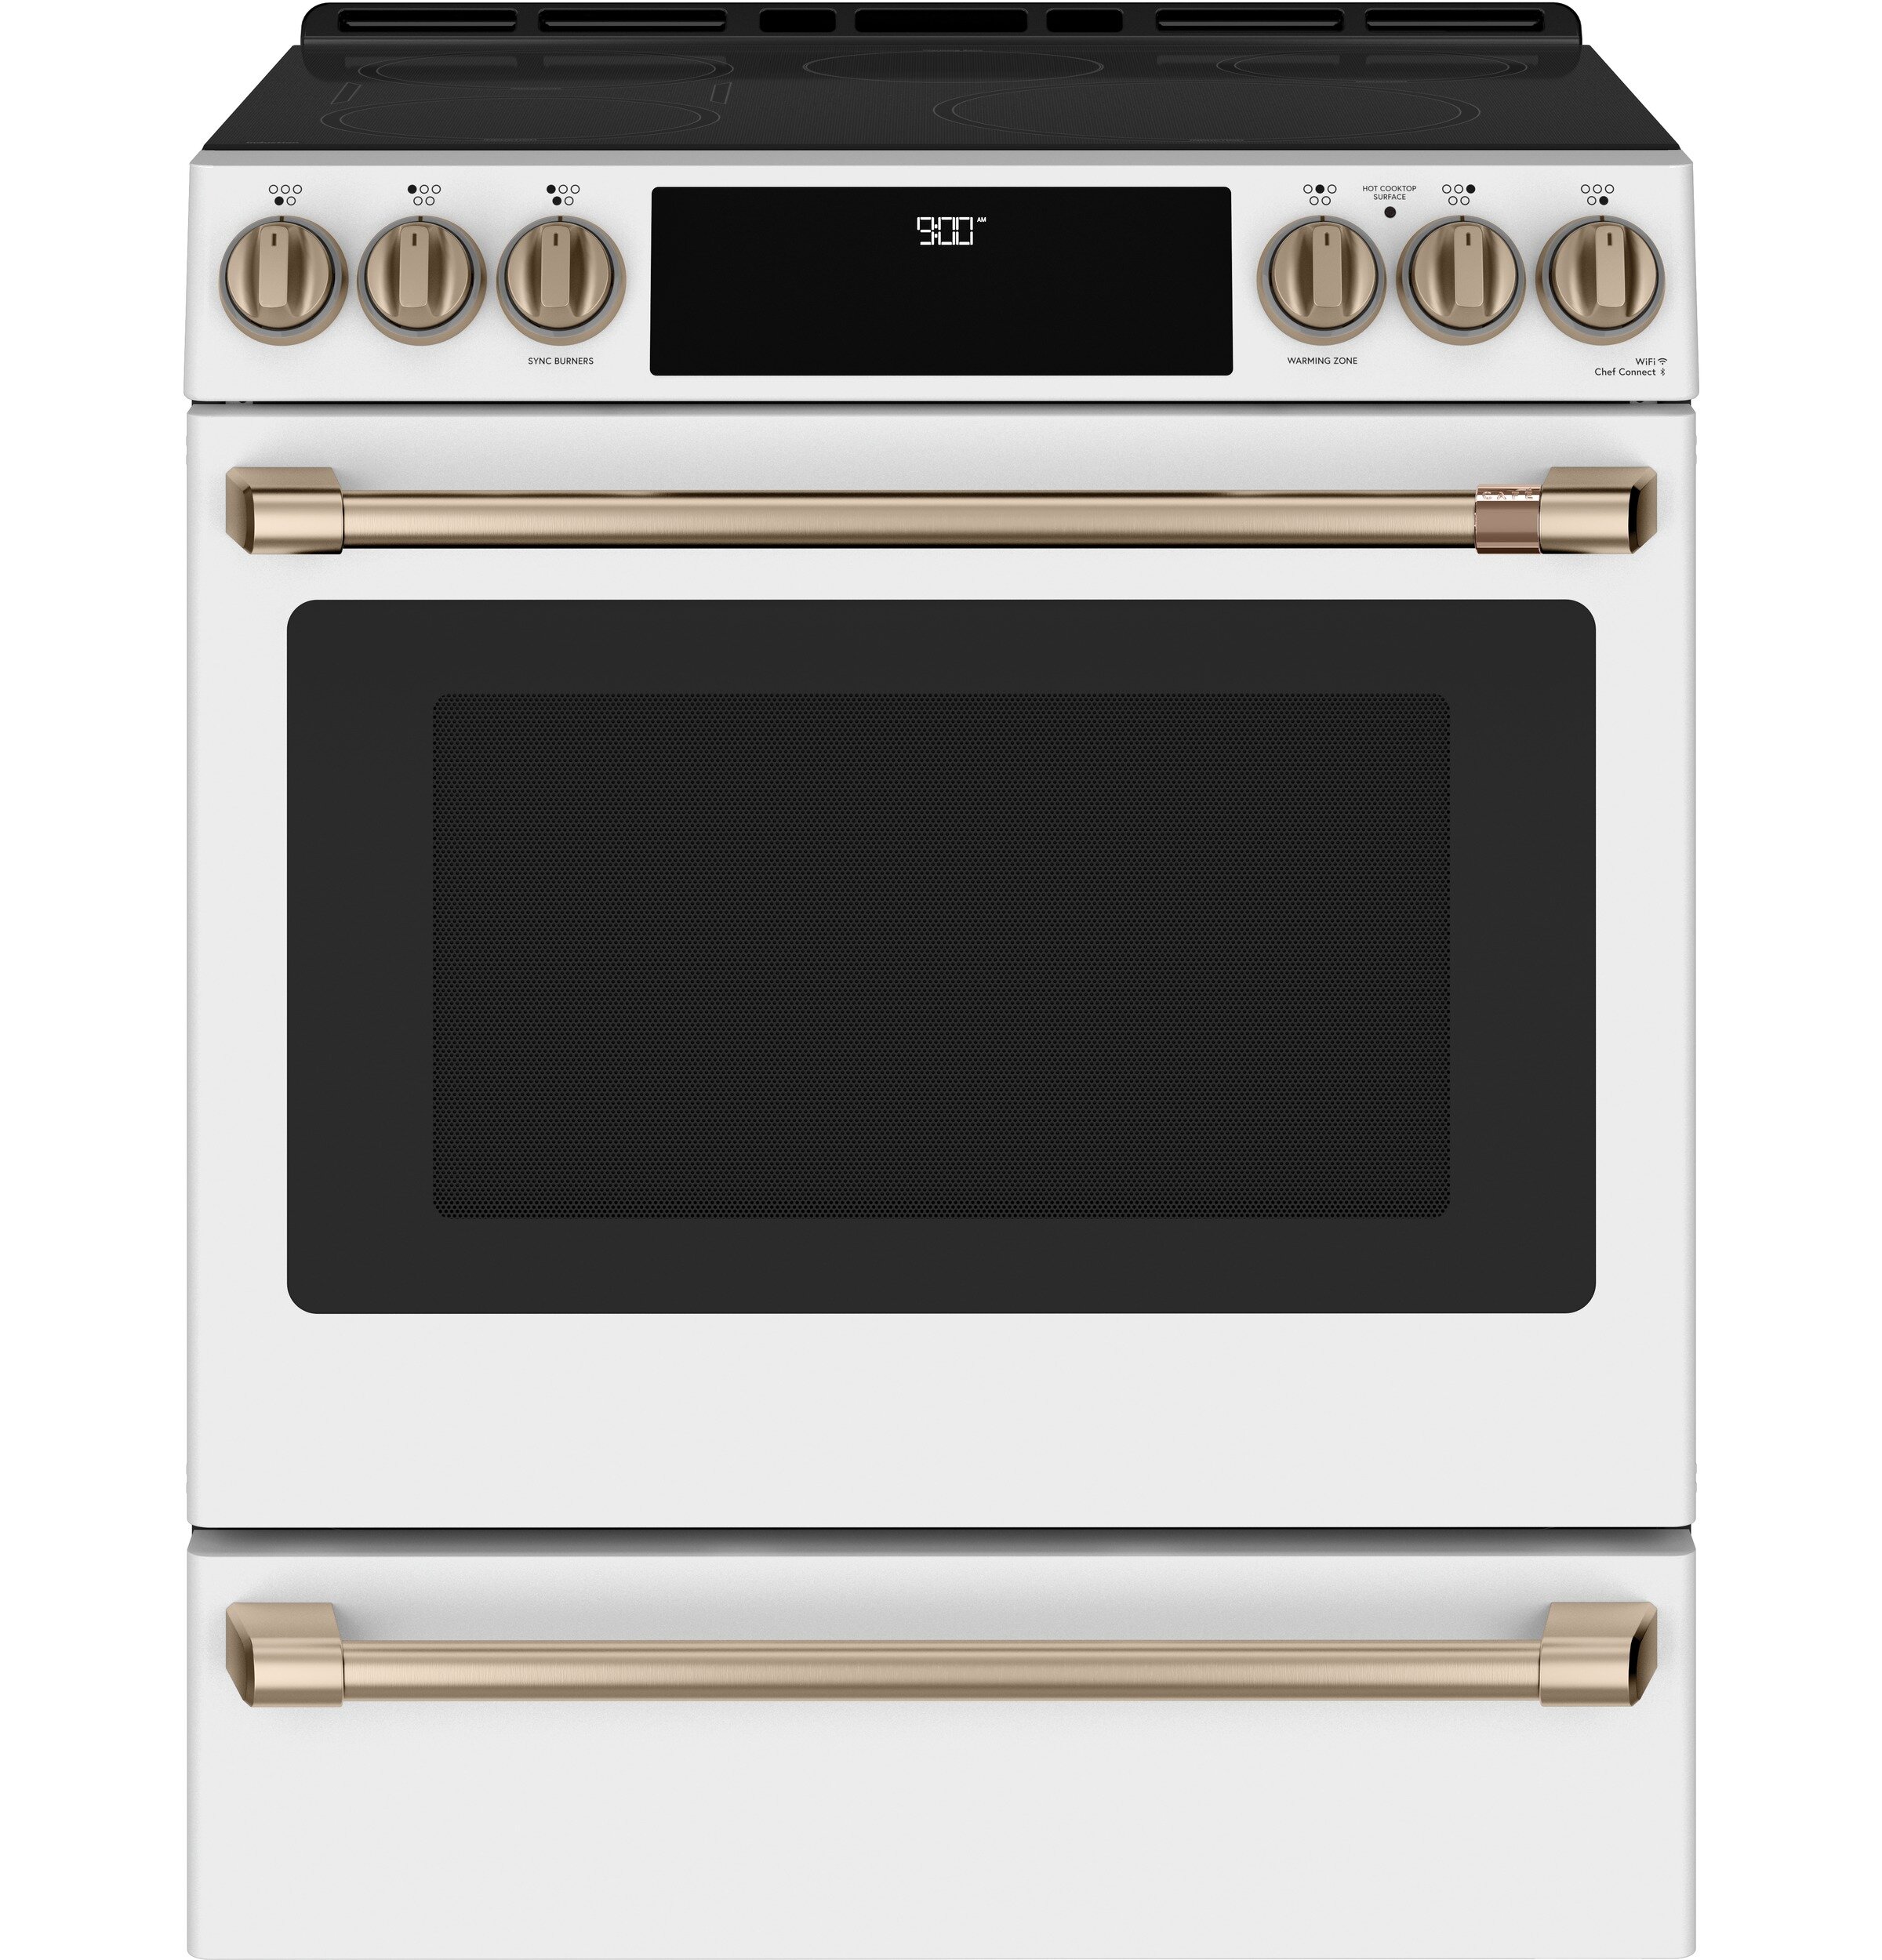 induction kitchen appliances